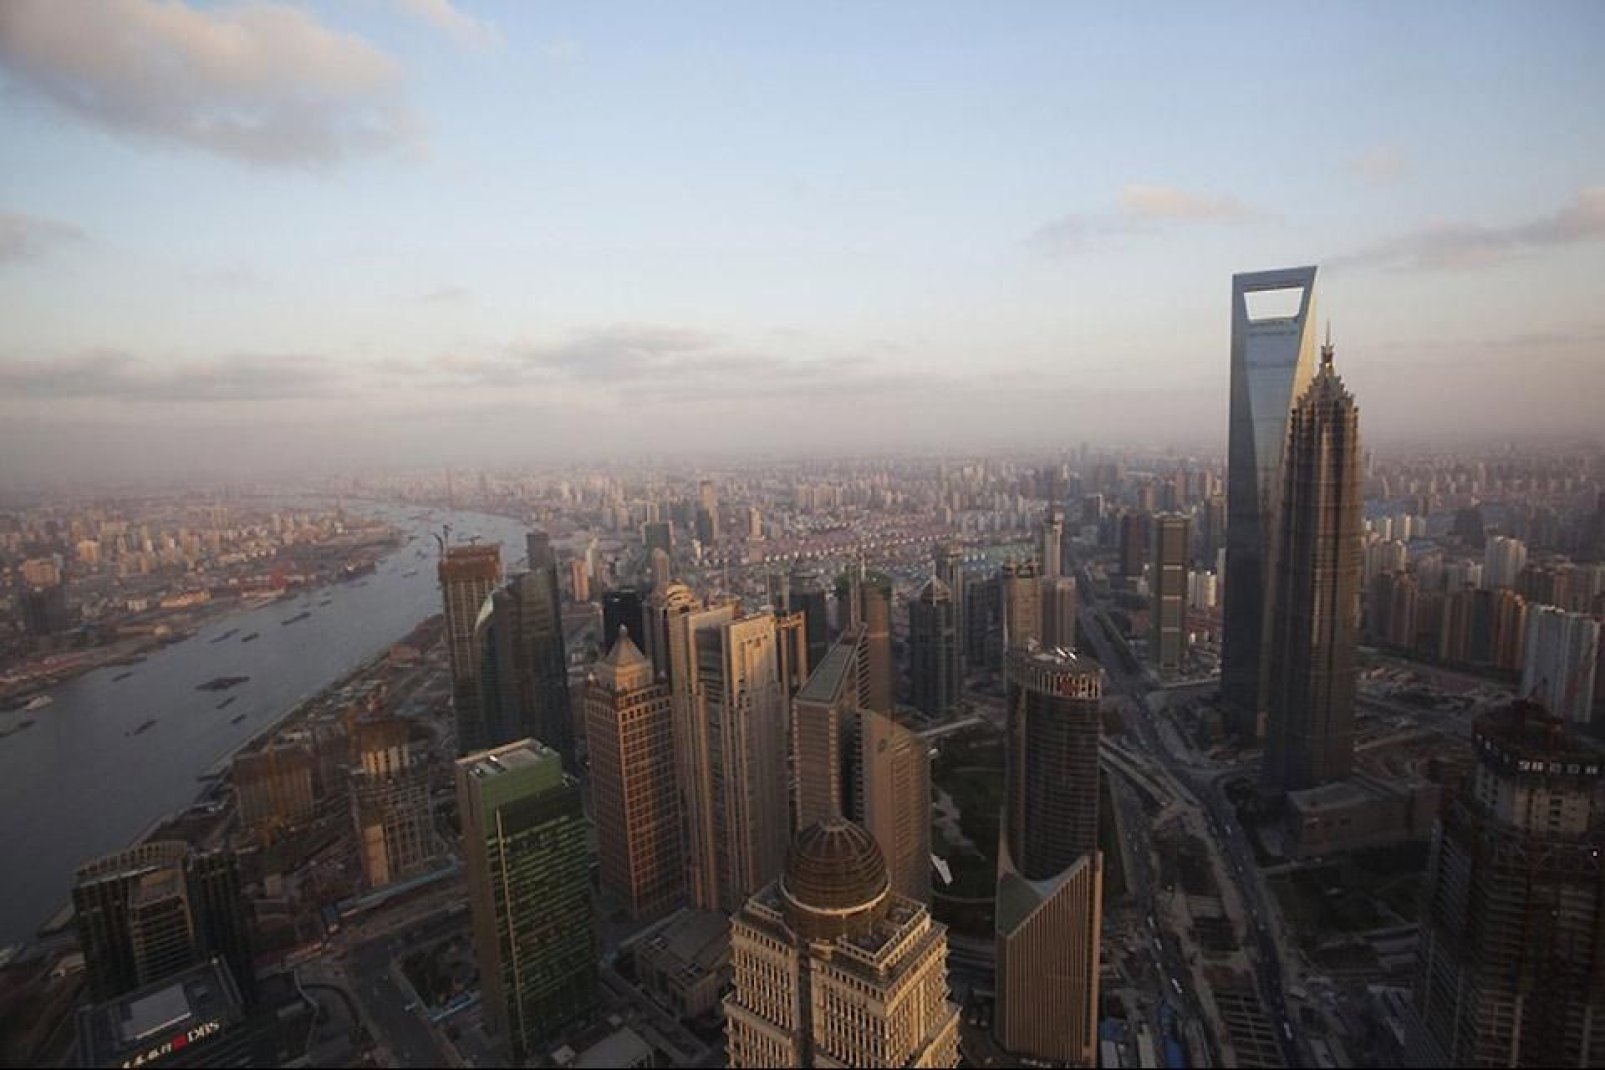 Vista dall'alto su Shangai. Si scorge la Shangai Tower del quartiere degli affari della città.